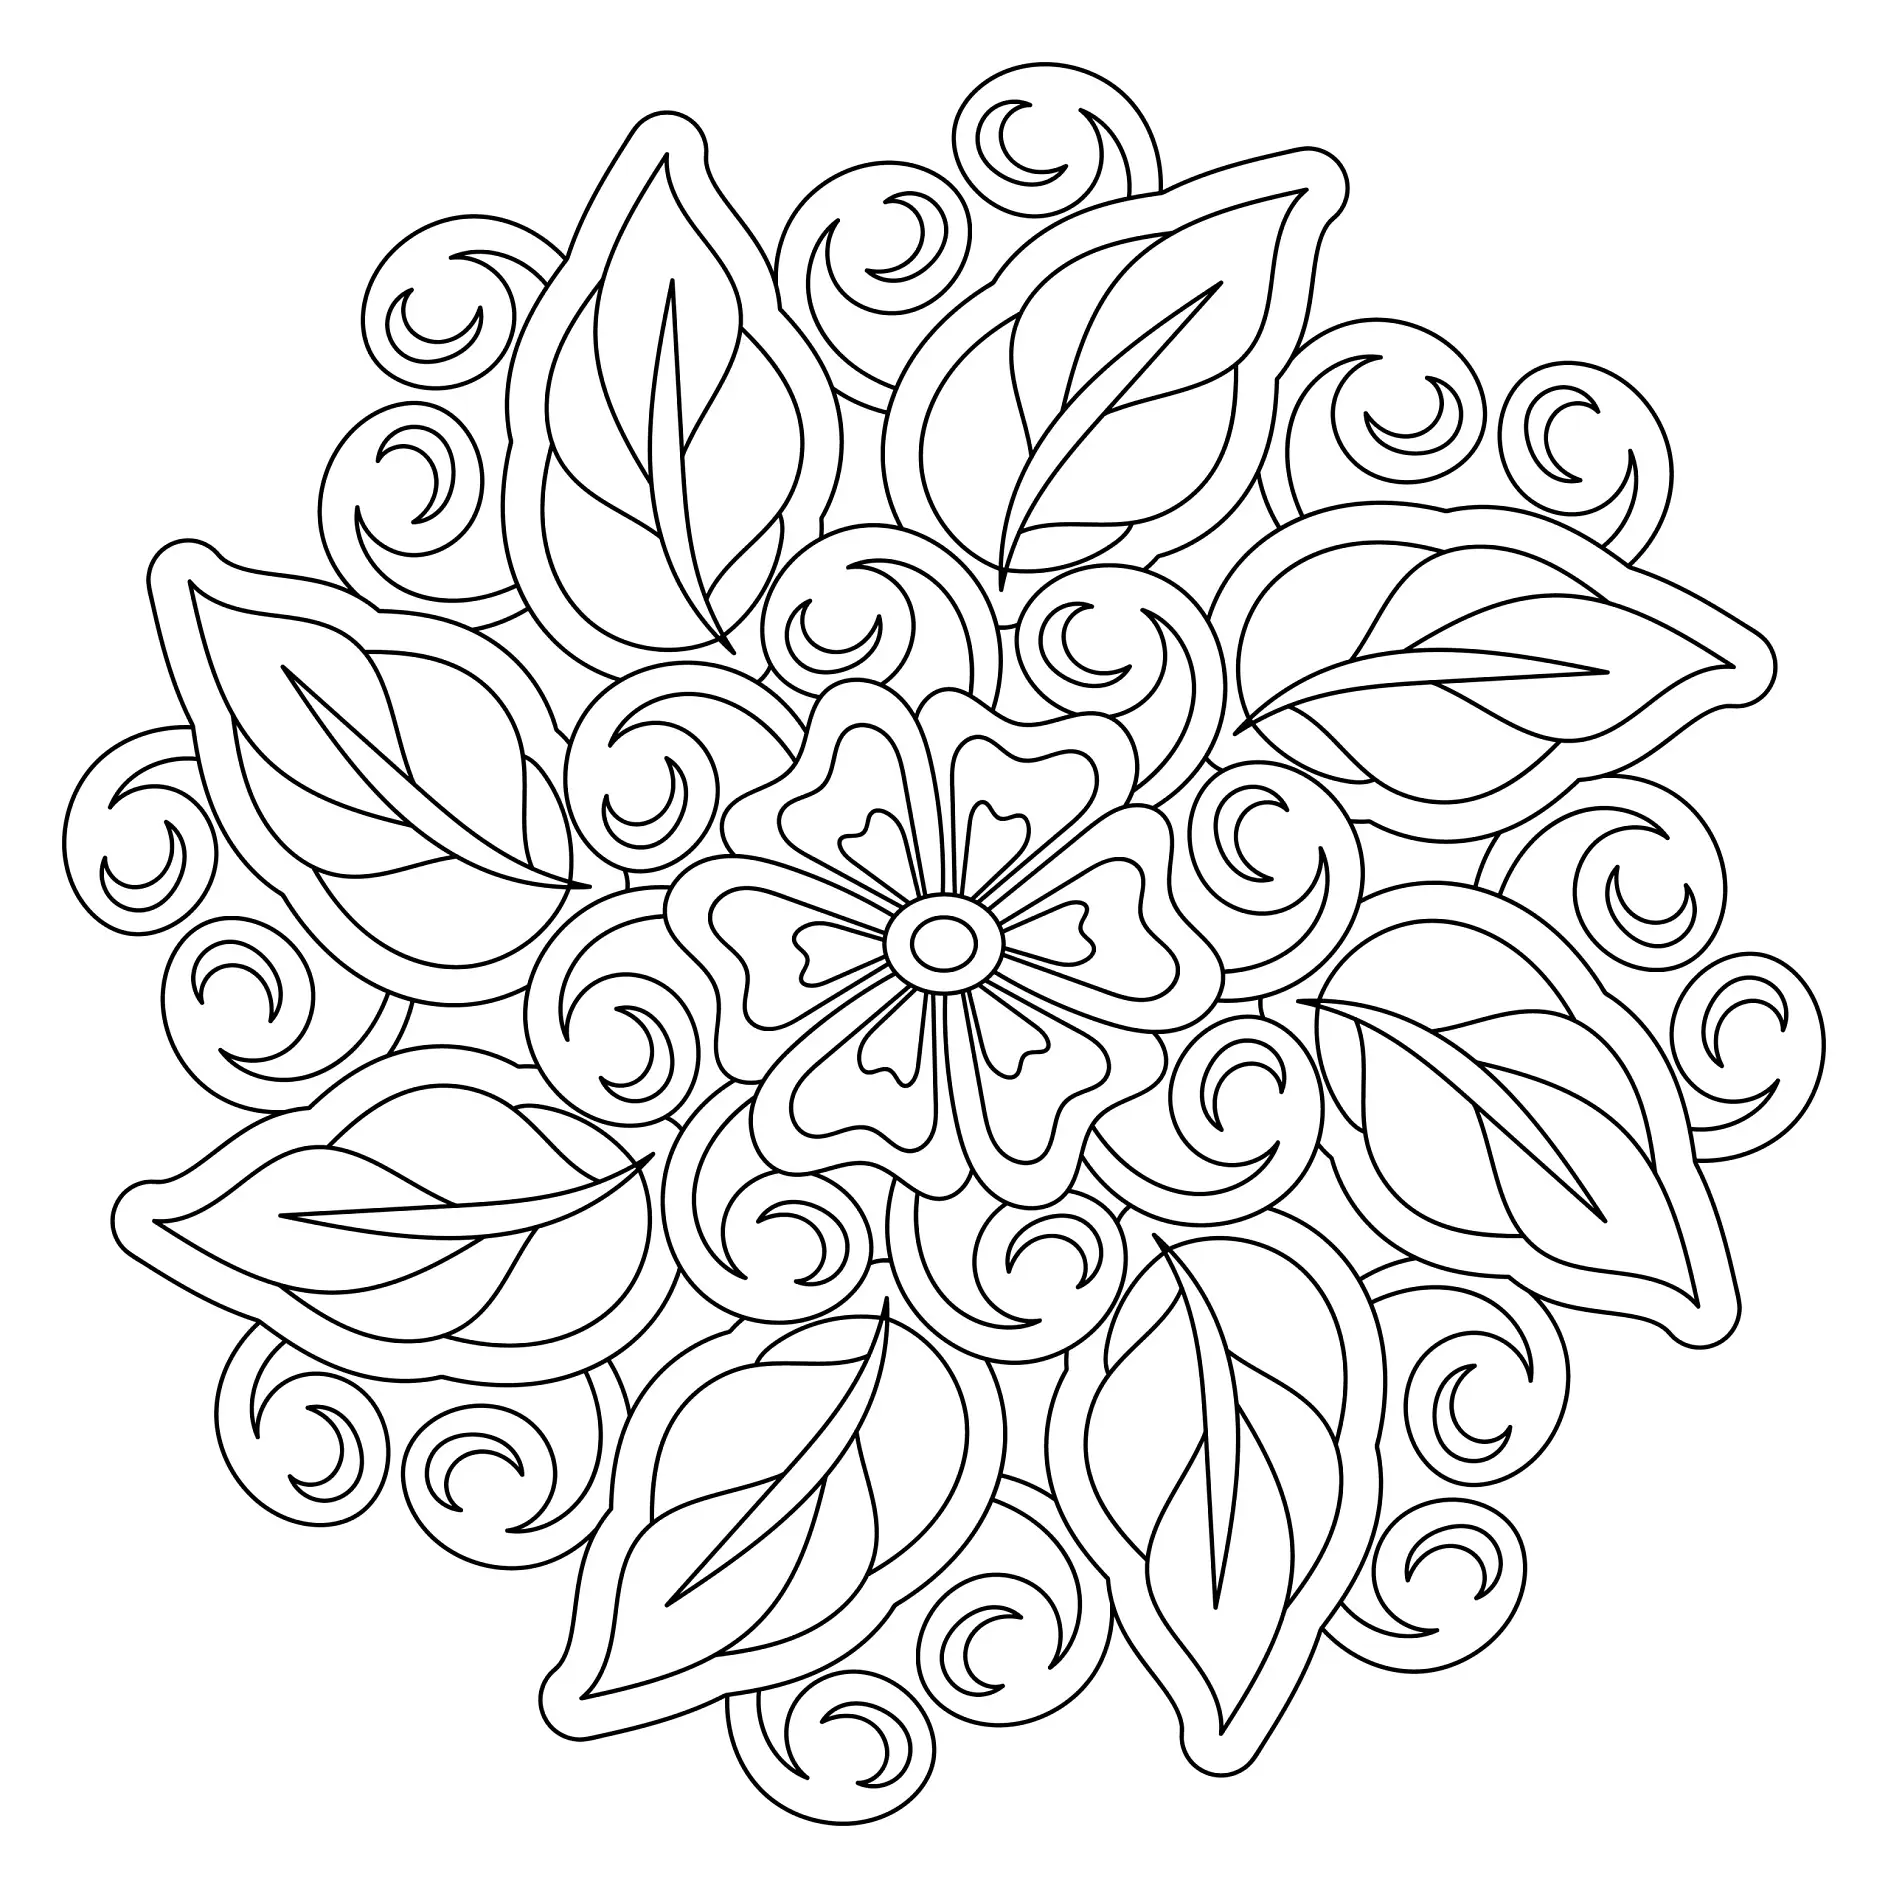 Ausmalbild Mandala mit floralen Motiven und spiralförmigen Verzierungen